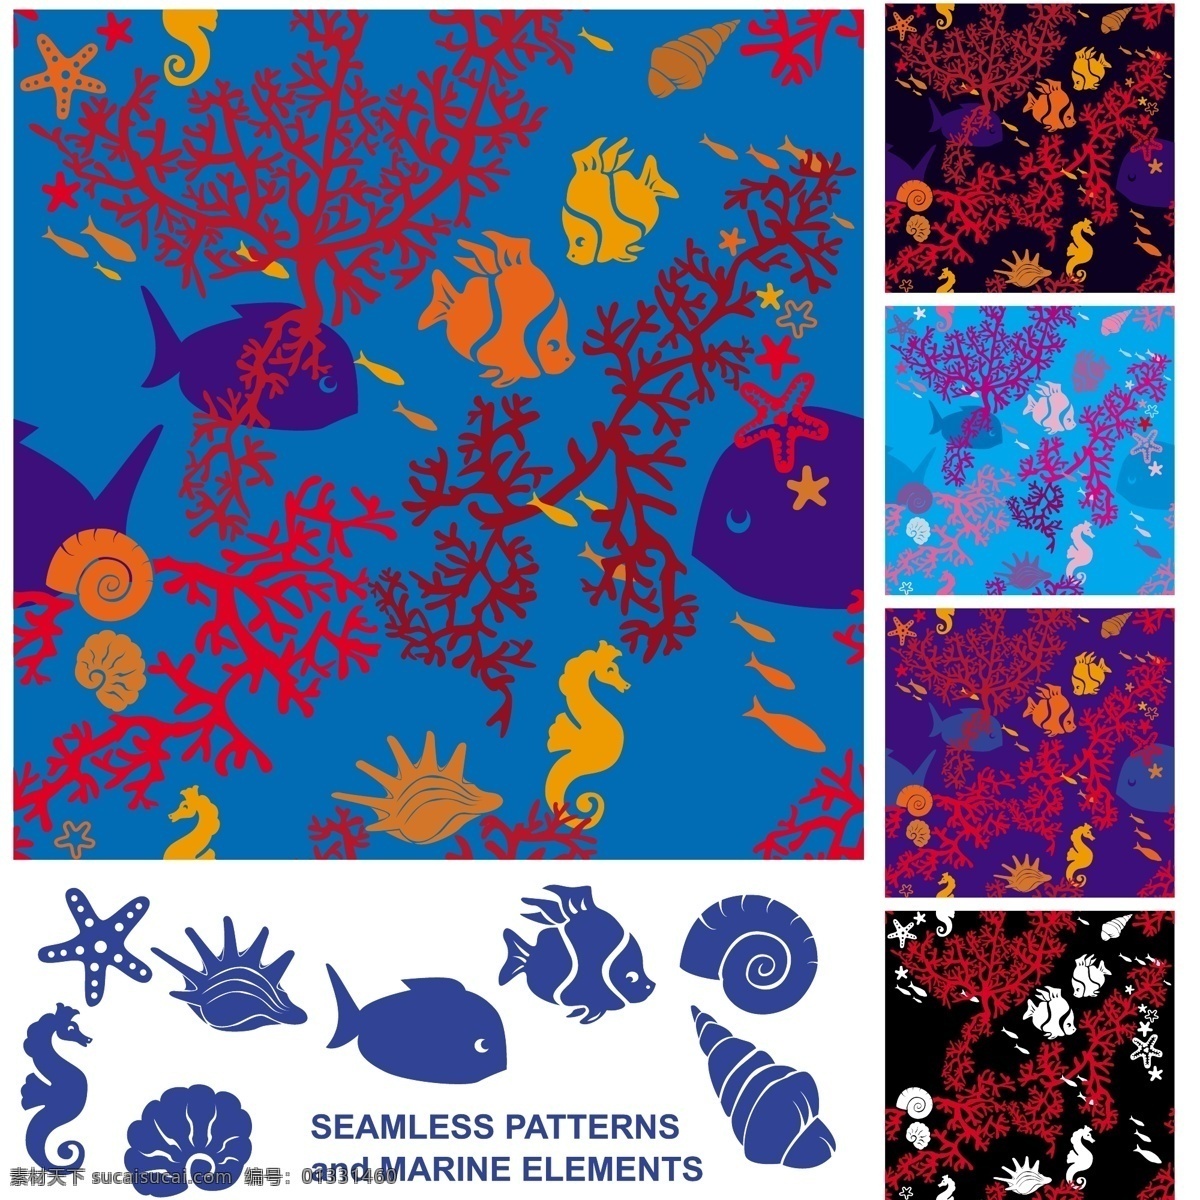 珊瑚 贝壳 海星 海洋 海洋生物 剪影 生物世界 珊瑚矢量素材 珊瑚模板下载 矢量 psd源文件